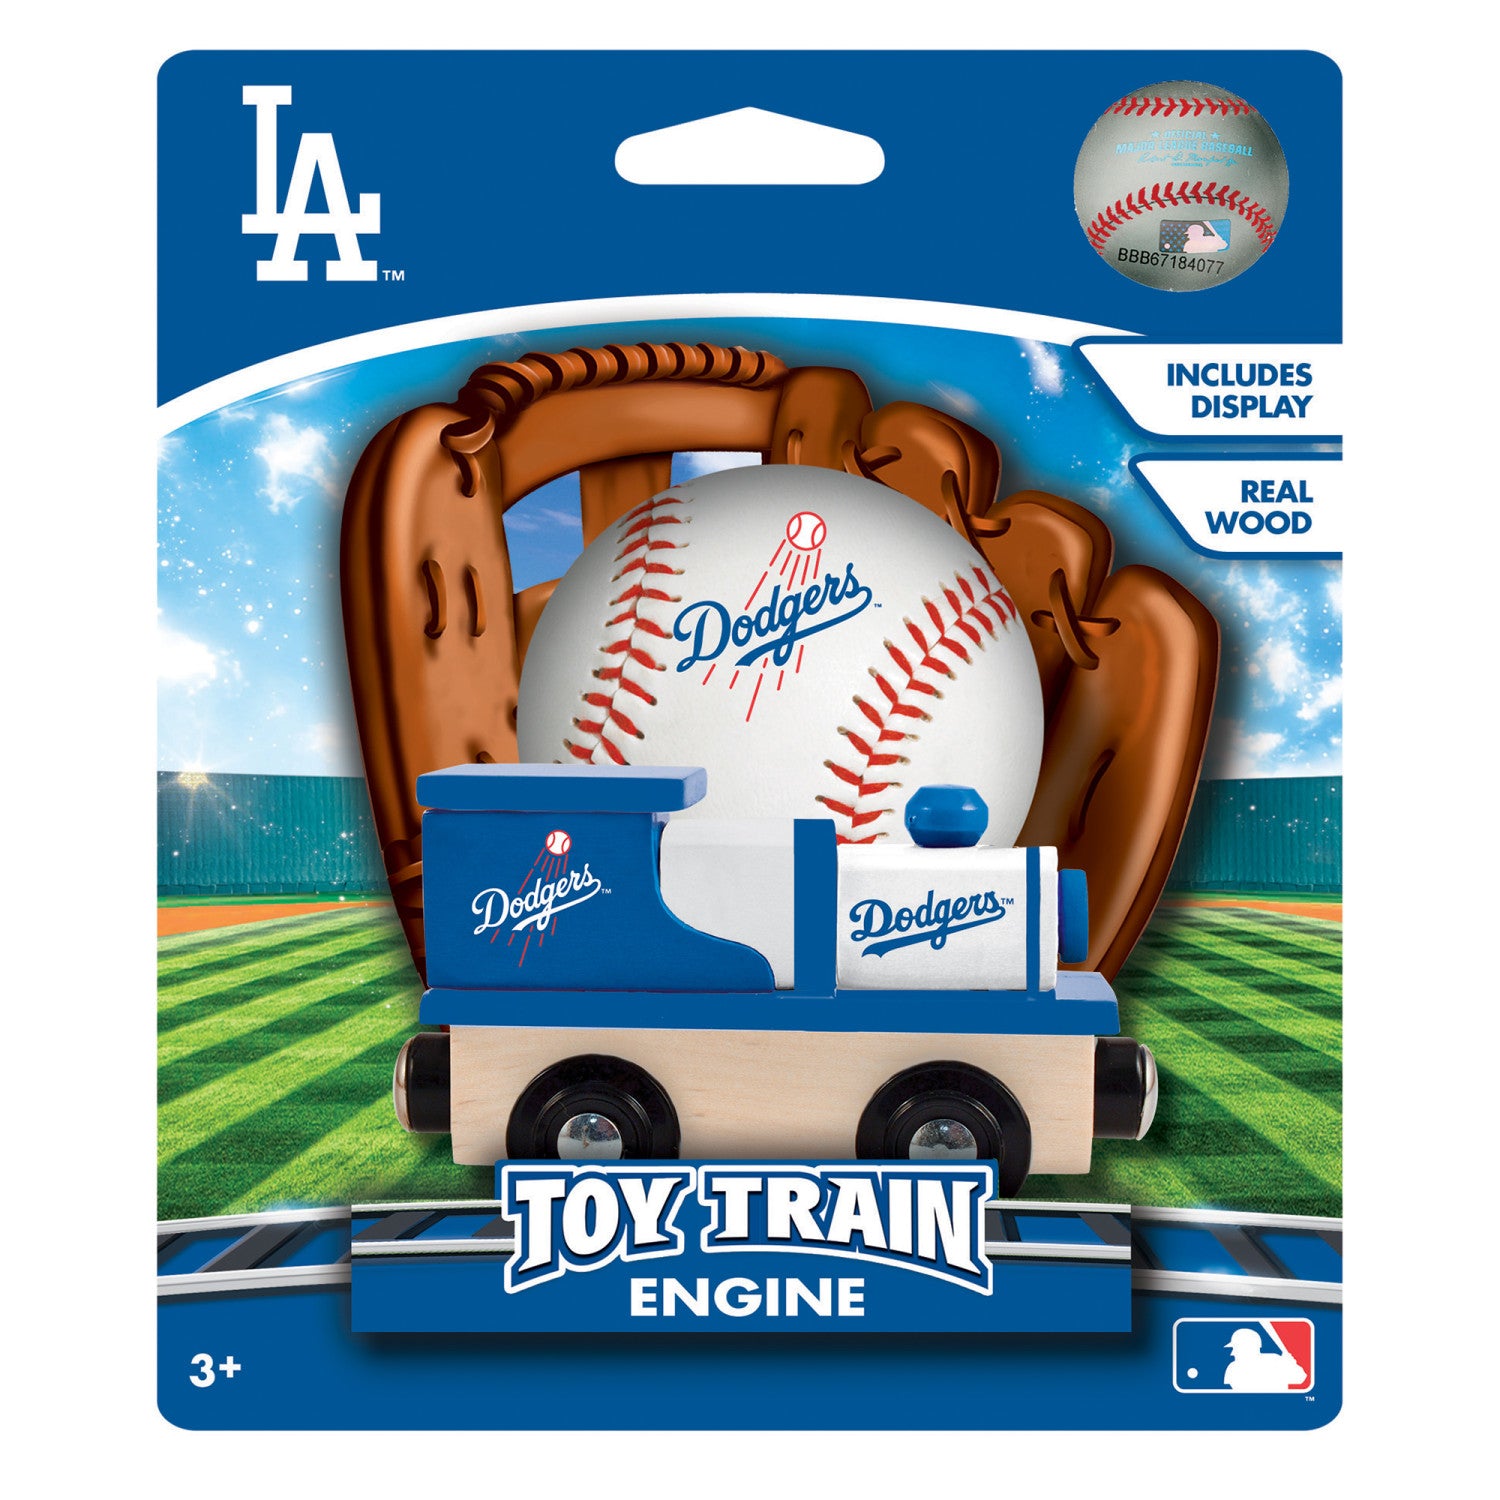 Los Angeles Dodgers MLB Wood Train Engine